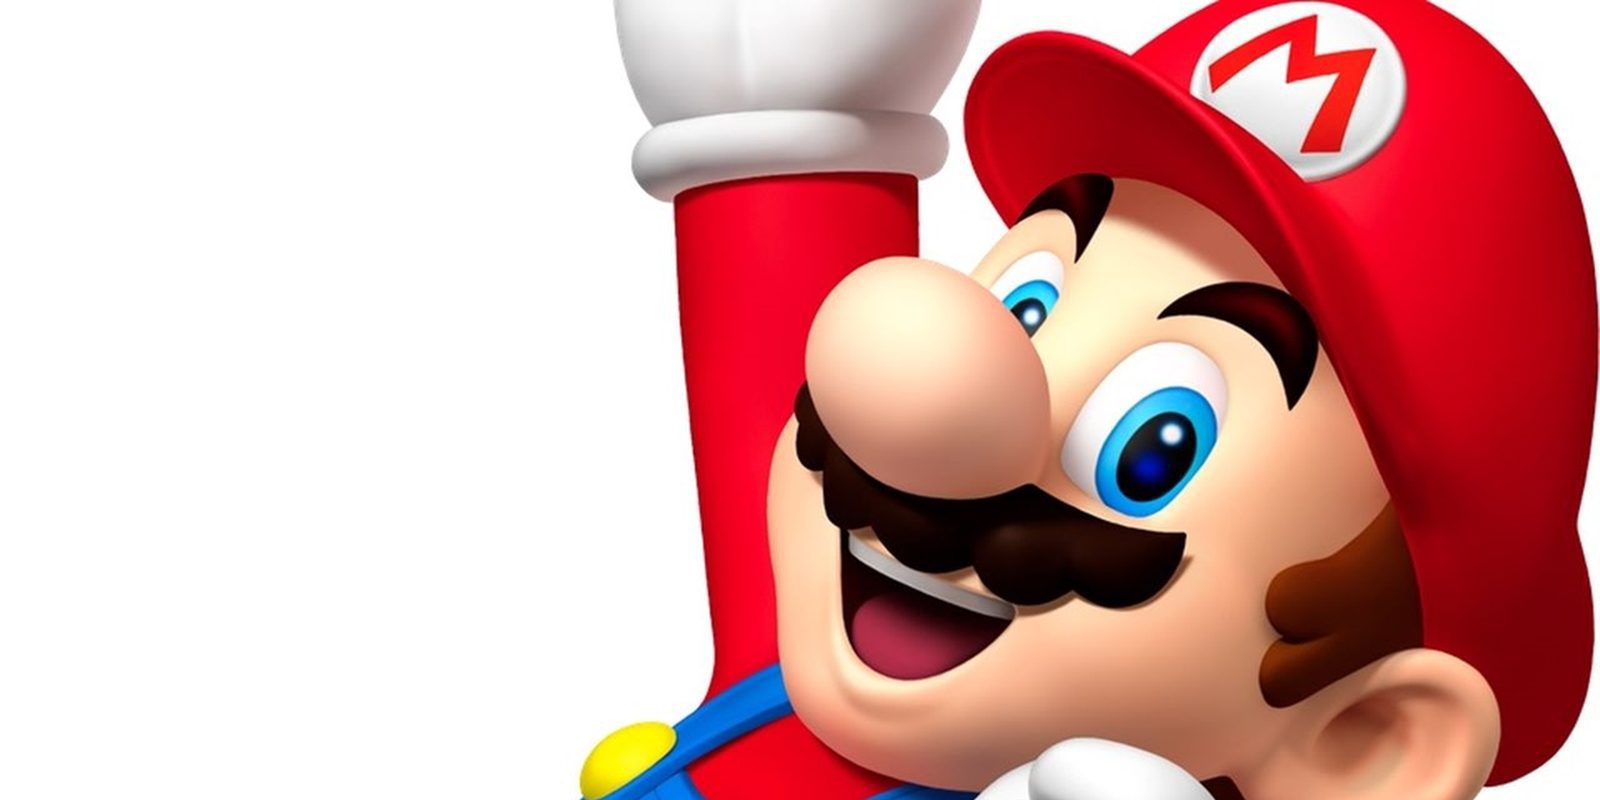 Nintendo es una de las 3 marcas más populares del planeta en social media según un estudio